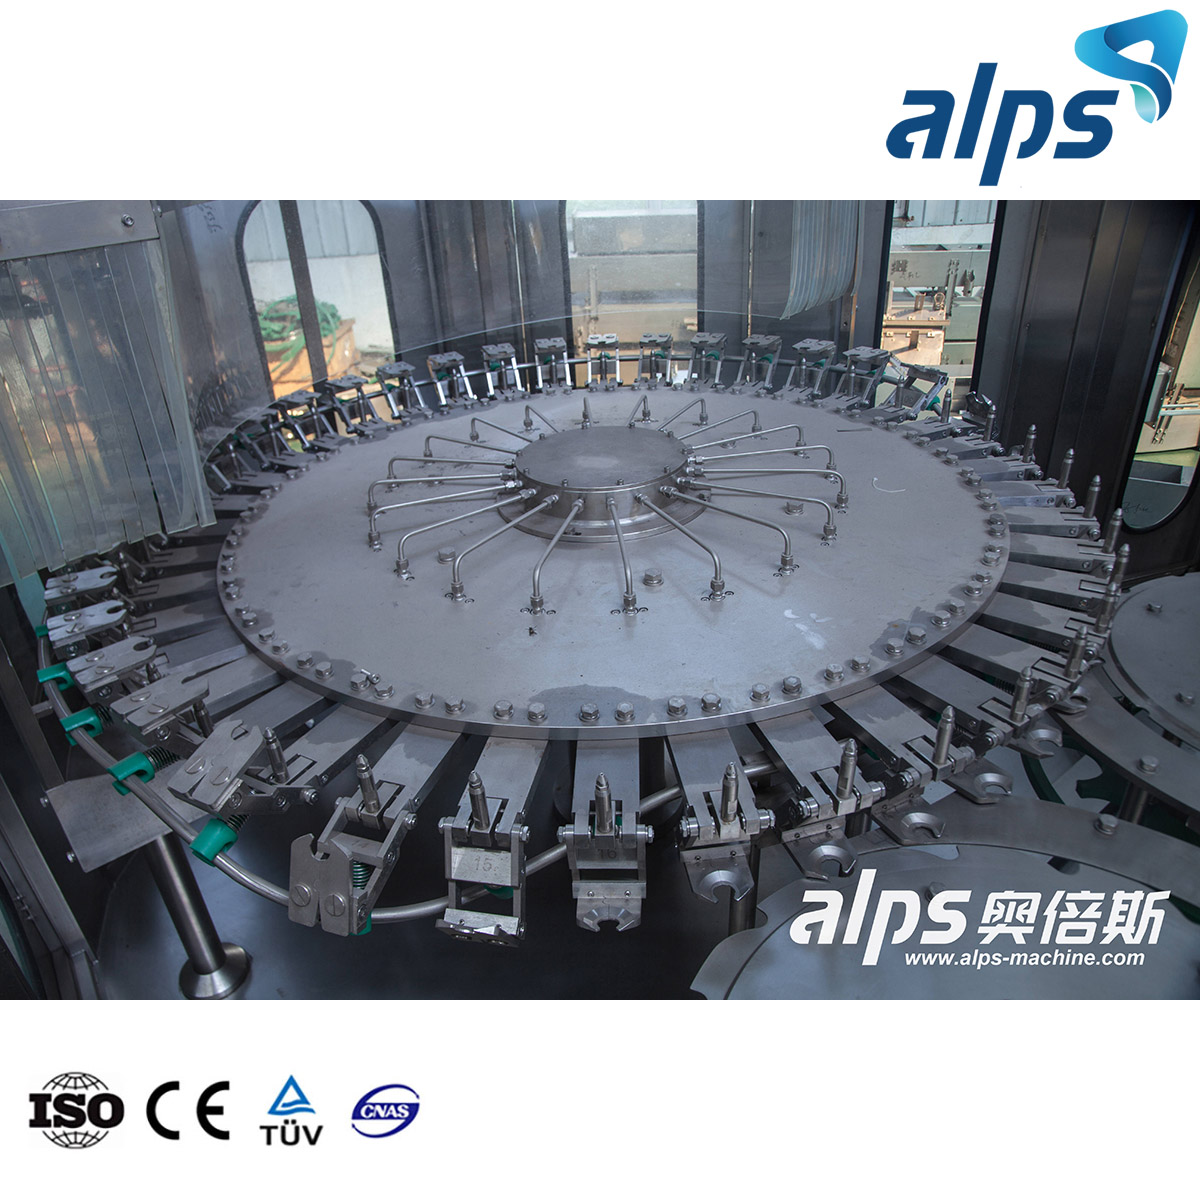 2022 Alps Fabricante de máquinas de llenado de botellas Máquina de llenado de agua 3 en 1 Máquina de llenado de cubos de yogur de 12 cabezas